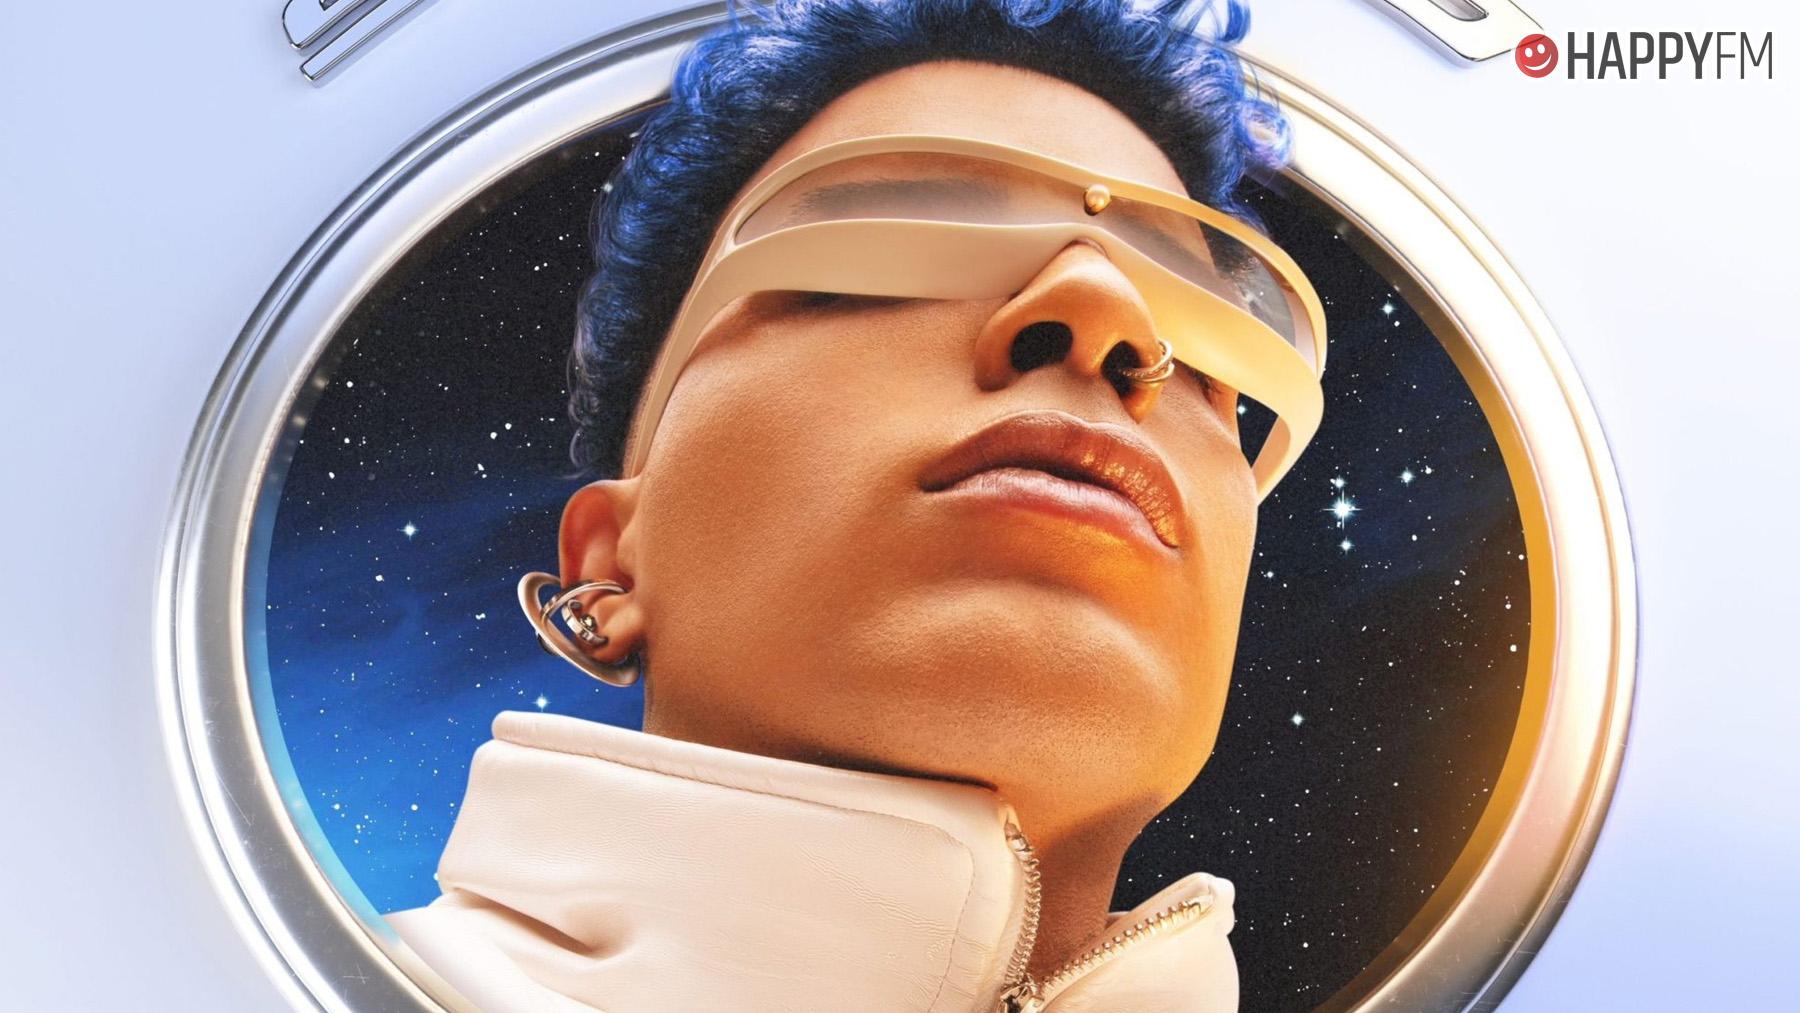 Rauw Alejandro vuelve a hacer historia con 'Saturno', su nuevo álbum